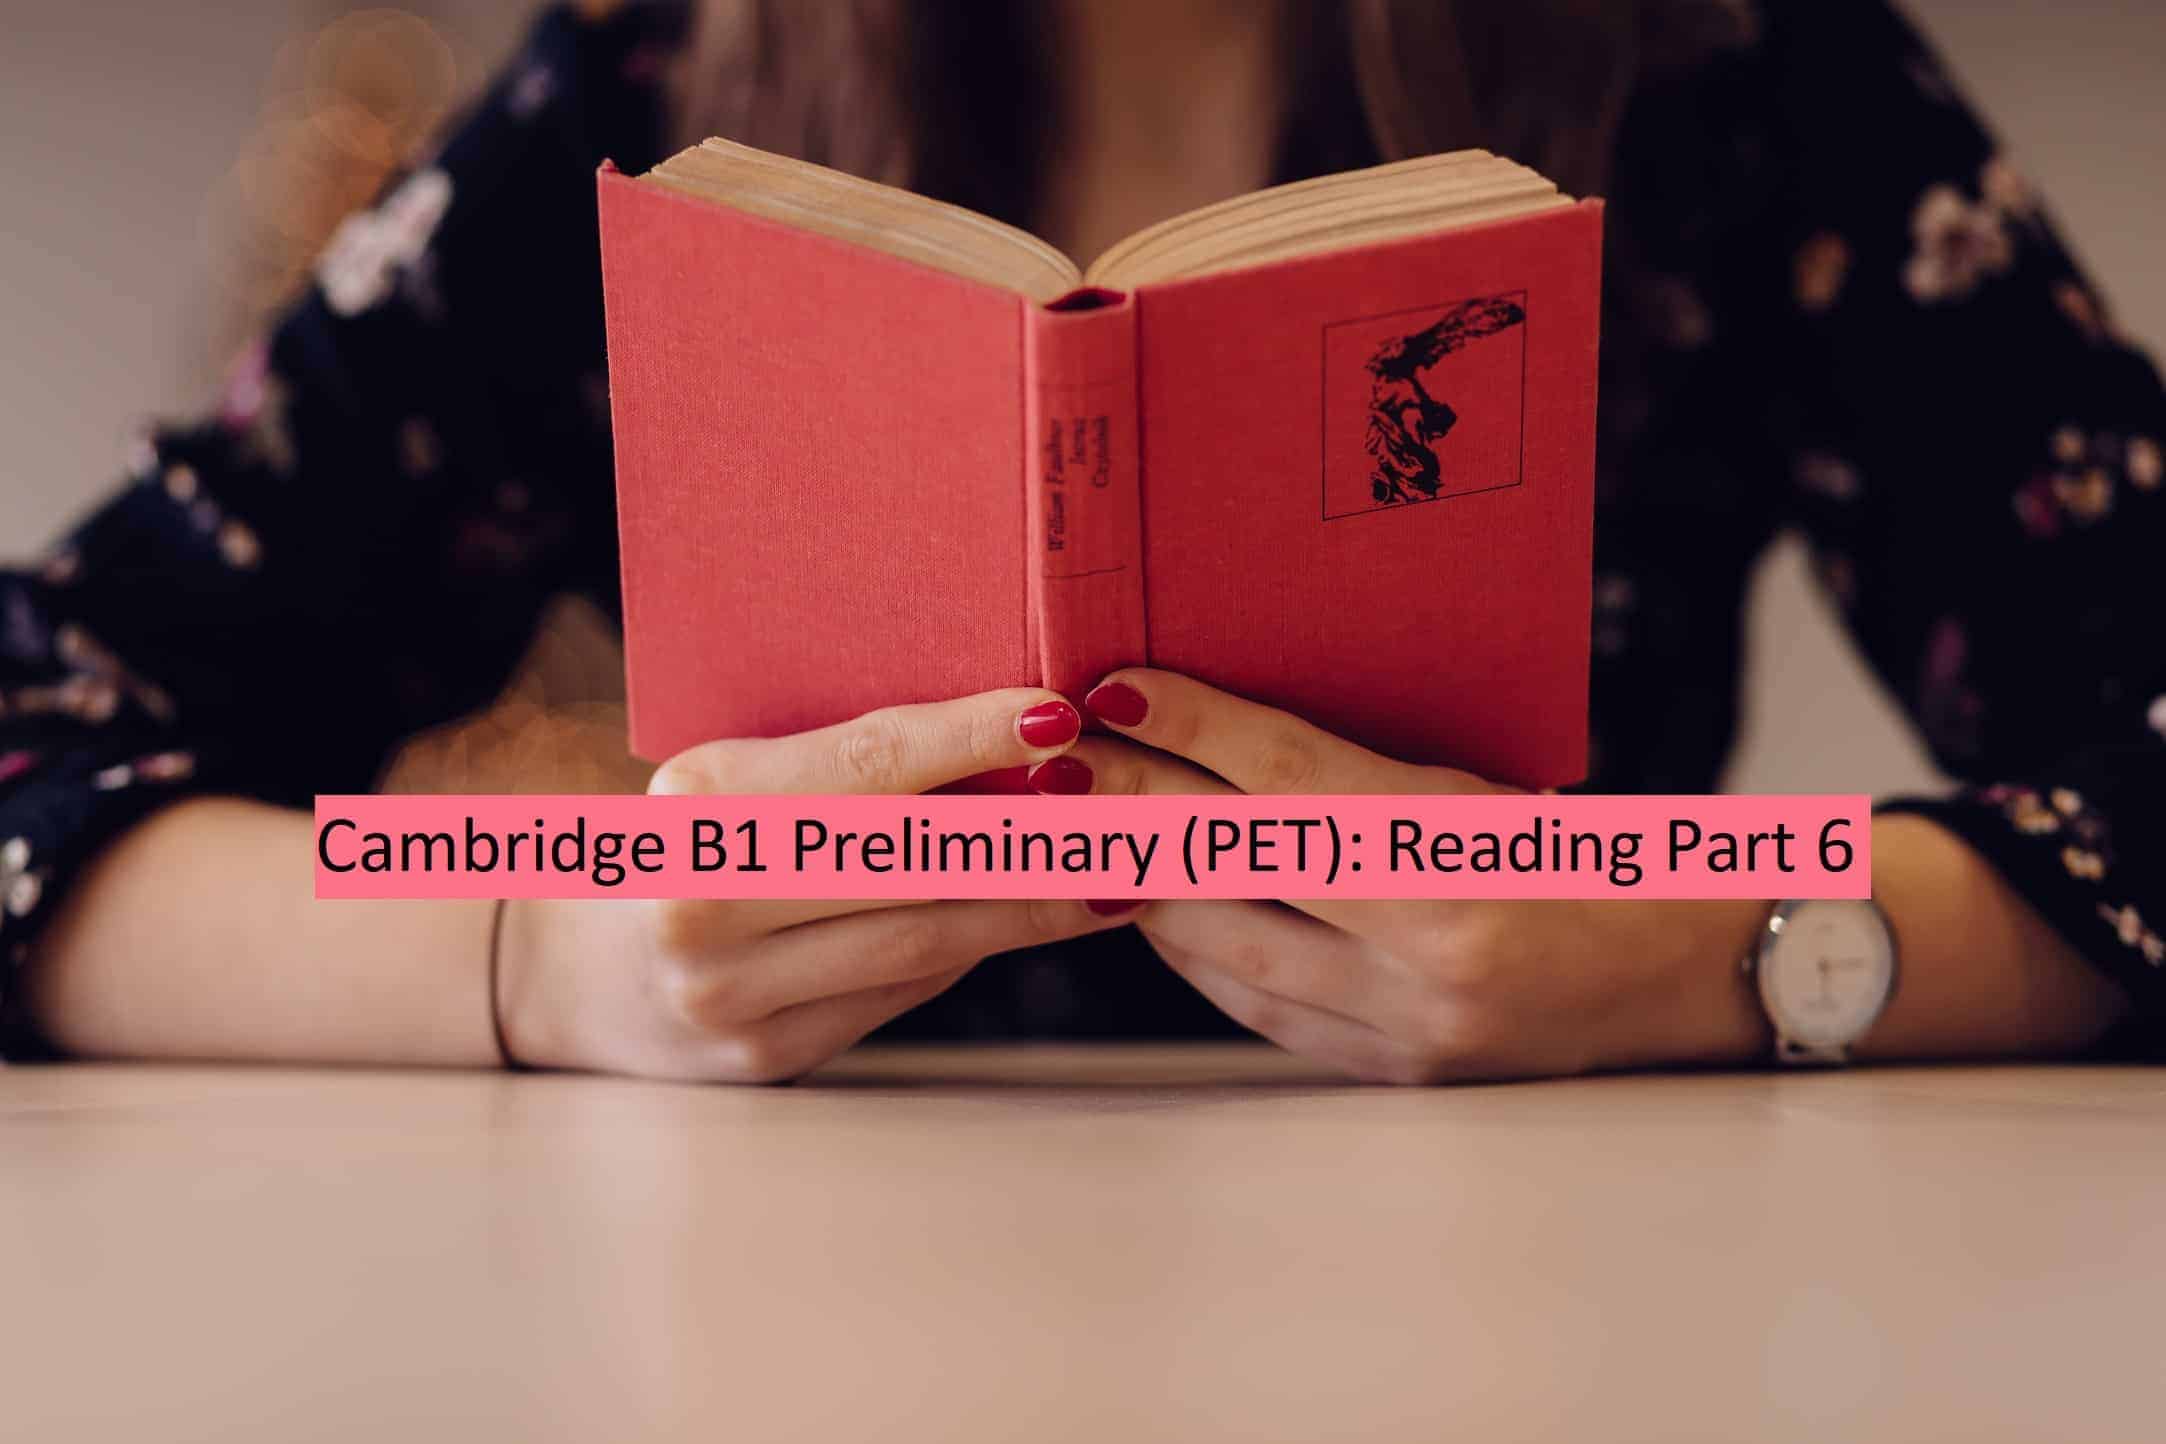 PET - Reading Part 6